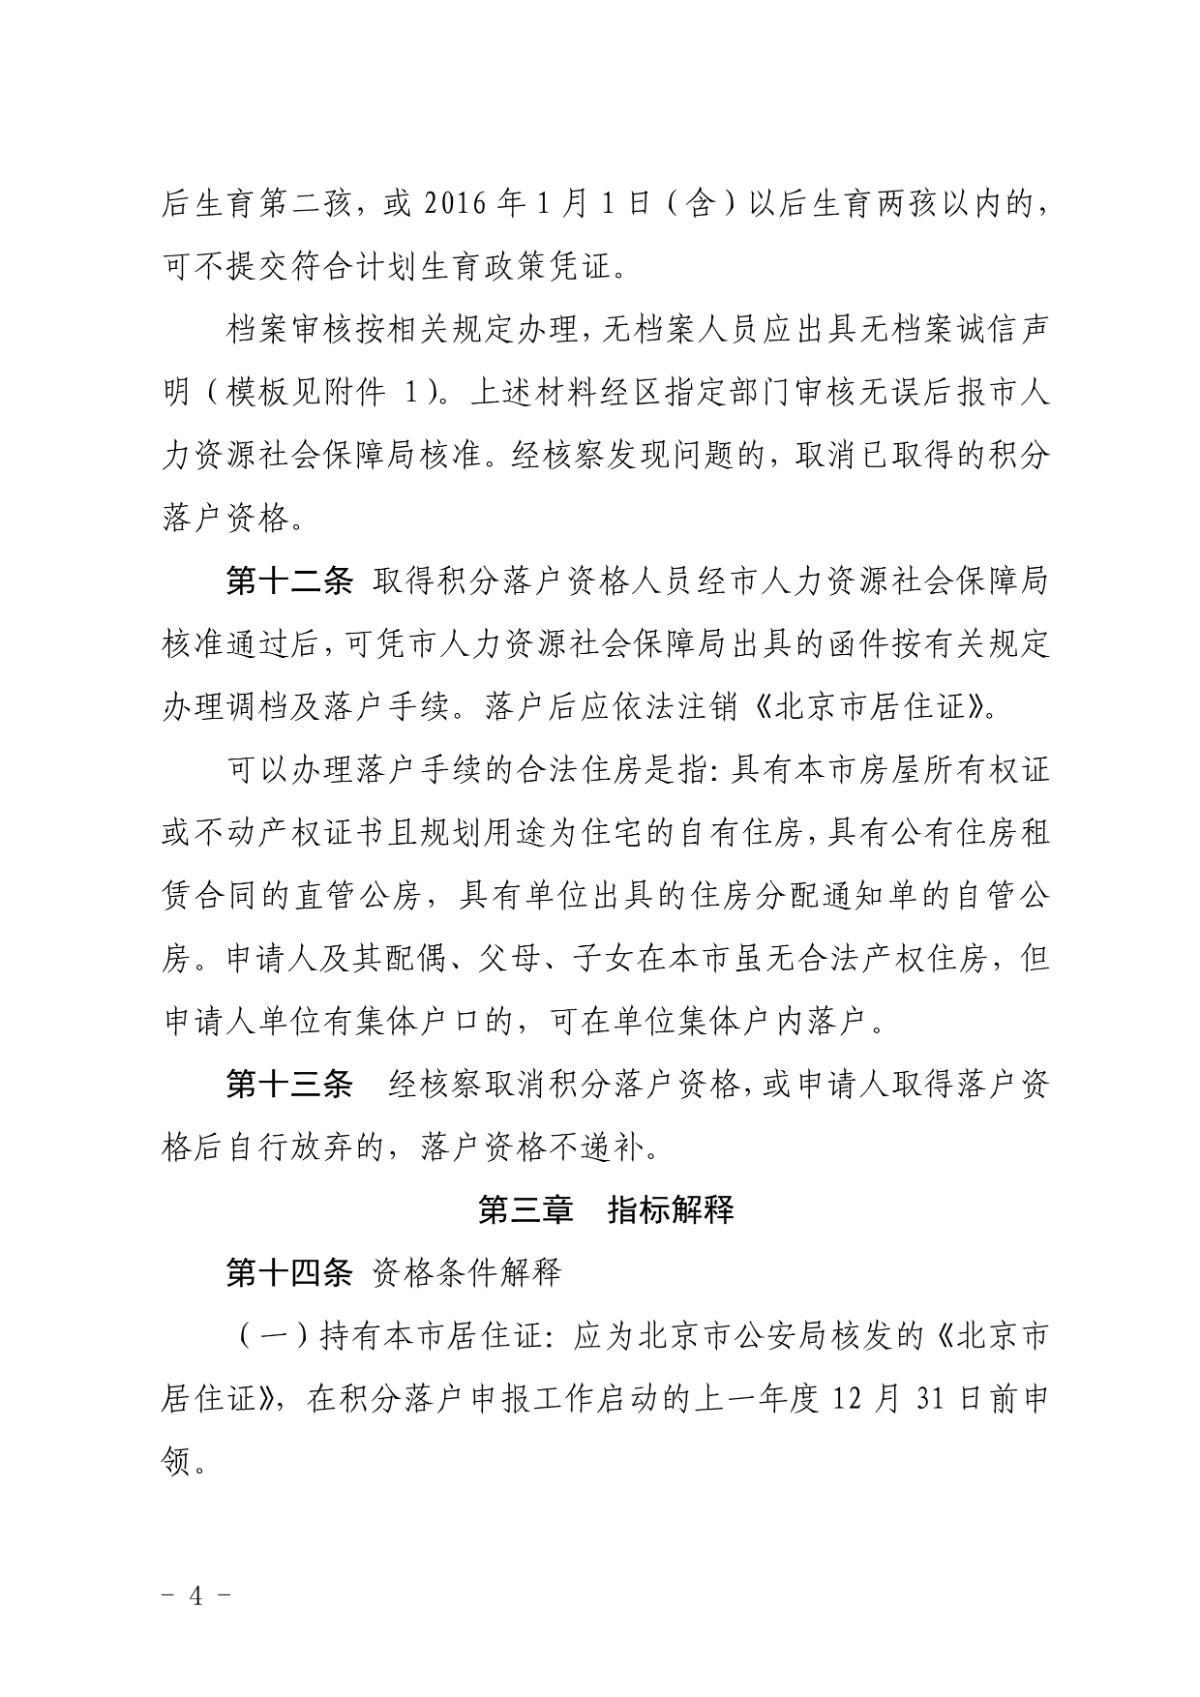 北京新版積分落戶政策徵求意見稿全文-中國網地産